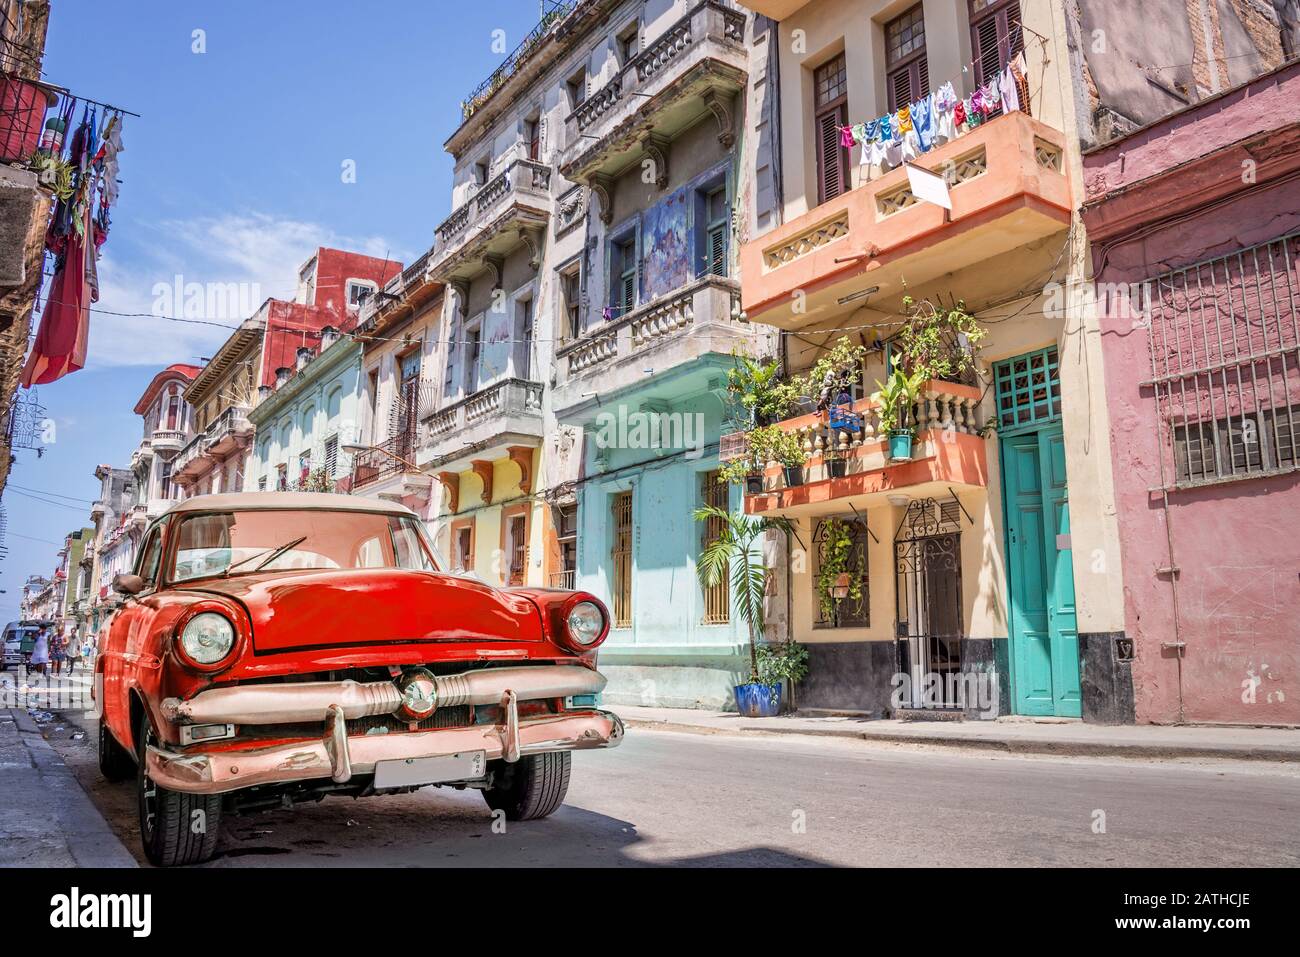 Classica auto rossa americana d'epoca in una strada colorata dell'Avana, Cuba. Foto Stock